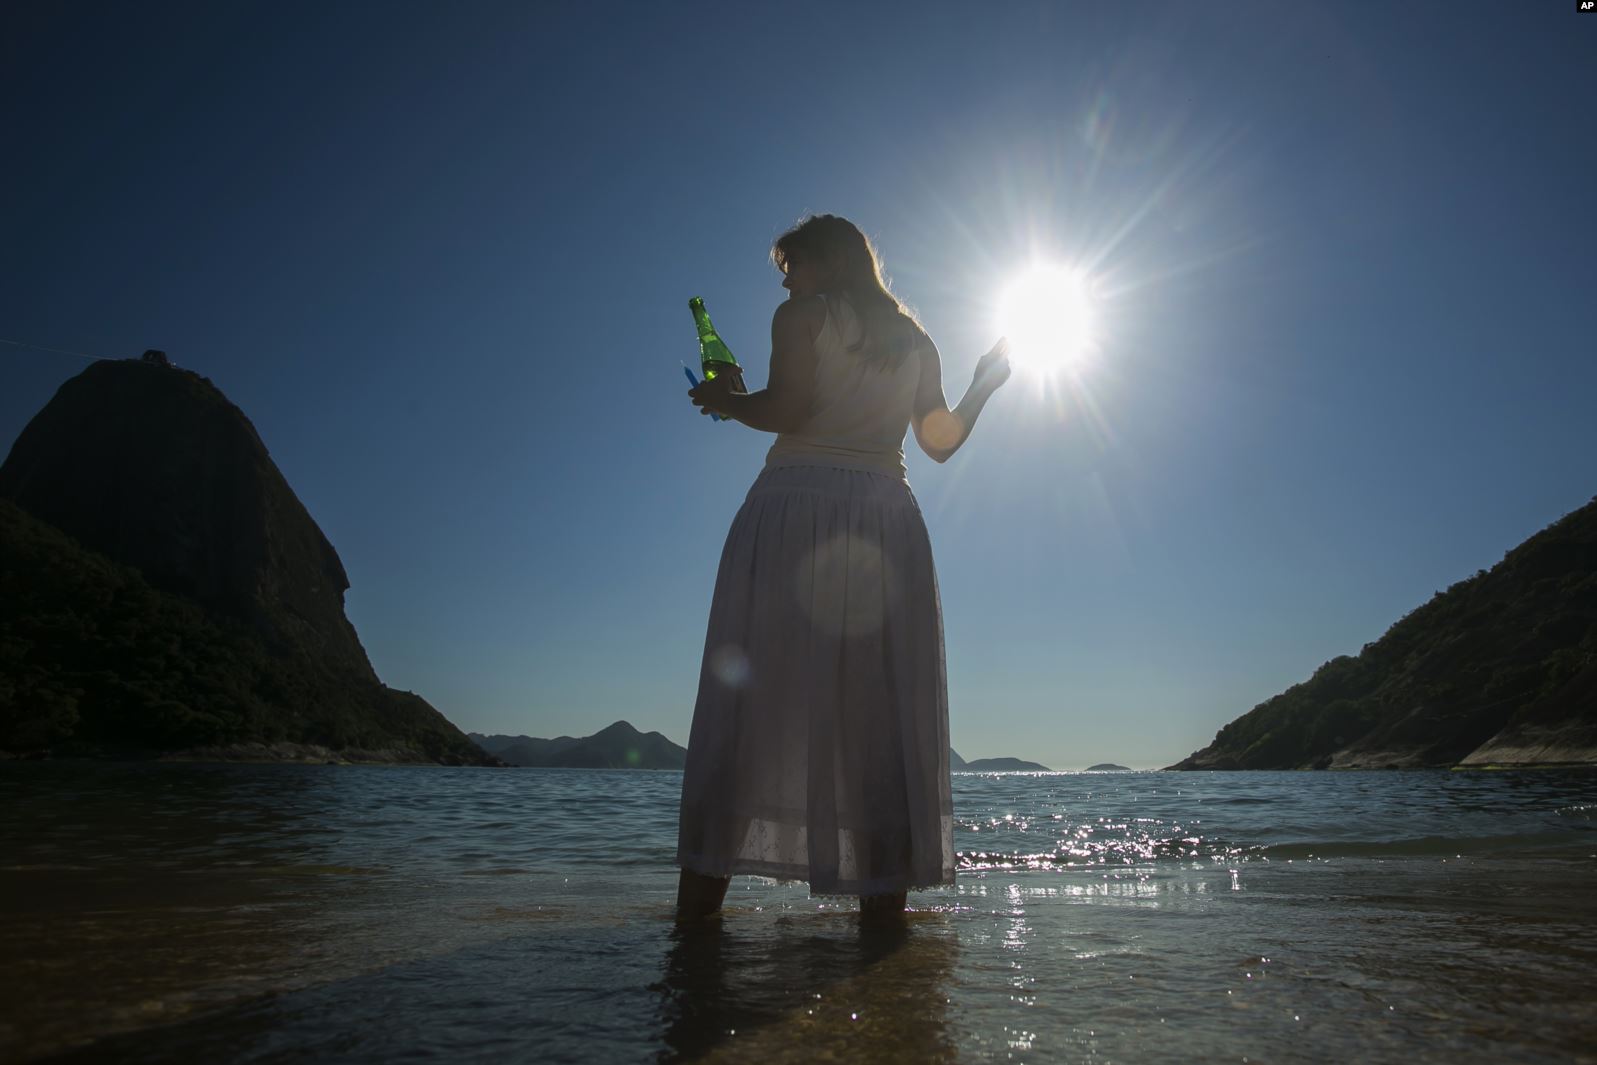 Una mujer sostiene una botella de sidra espumante como una ofrenda a Yemayá, una deidad de la religión africana Yoruba, durante una ceremonia en honor a la diosa del mar, la cual es parte de la celebración en Praia Vermelha, en Rio de Janeiro, Brasil, el 31 de diciembre de 2019. | Foto: AP / Voz de América